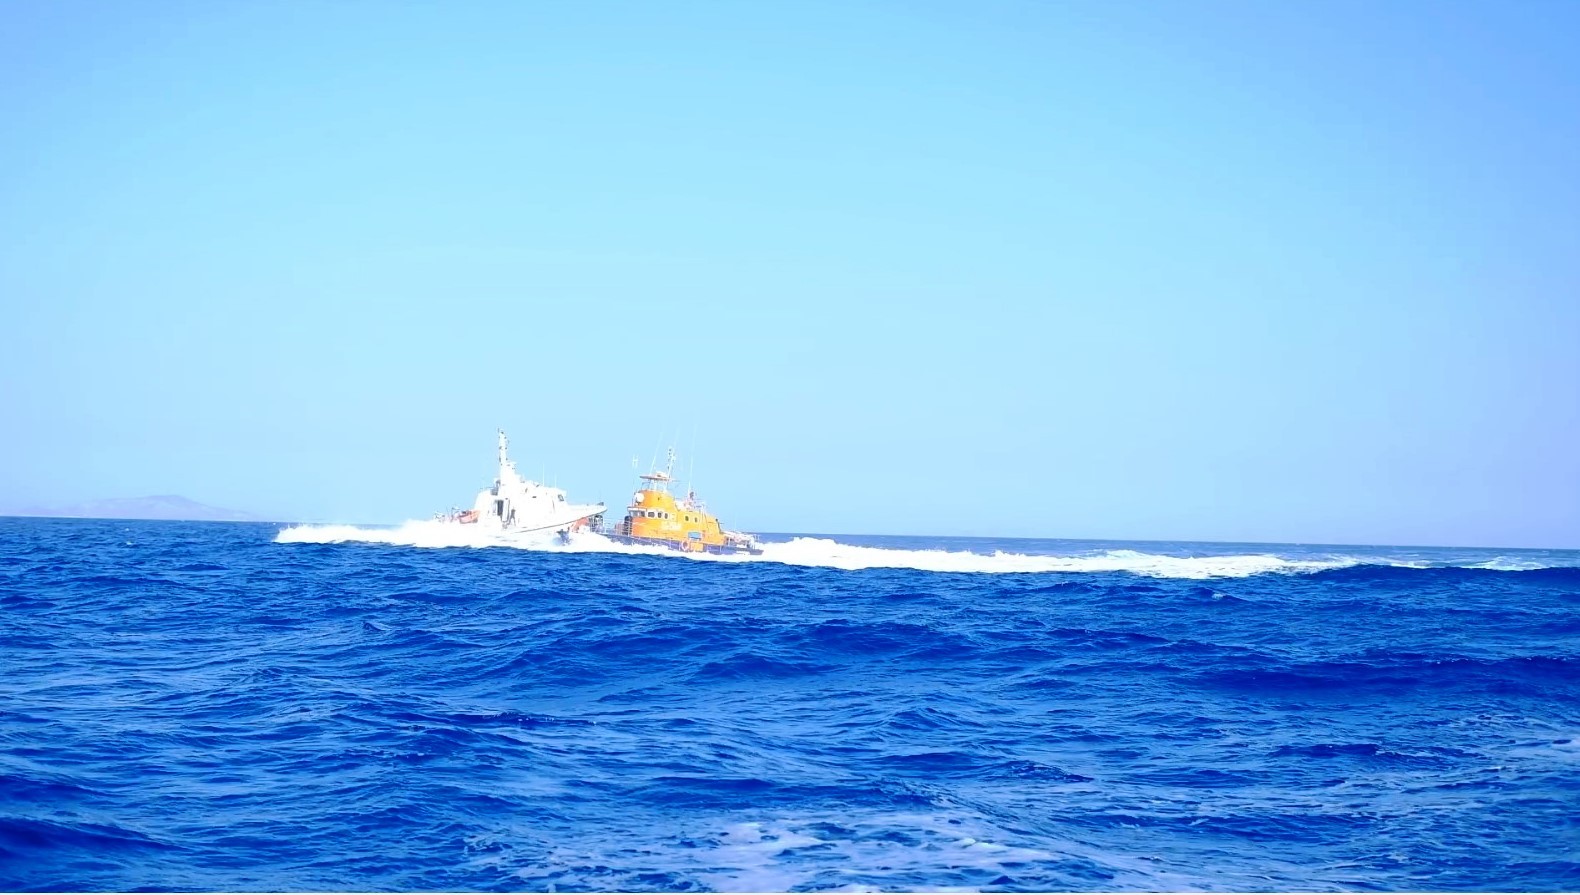 Yunan Sahil Güvenliği, yelkenli tekneyi taciz etti! Türk askeri: ‘Rotanızı değiştirmeyin, tam yol ileri!